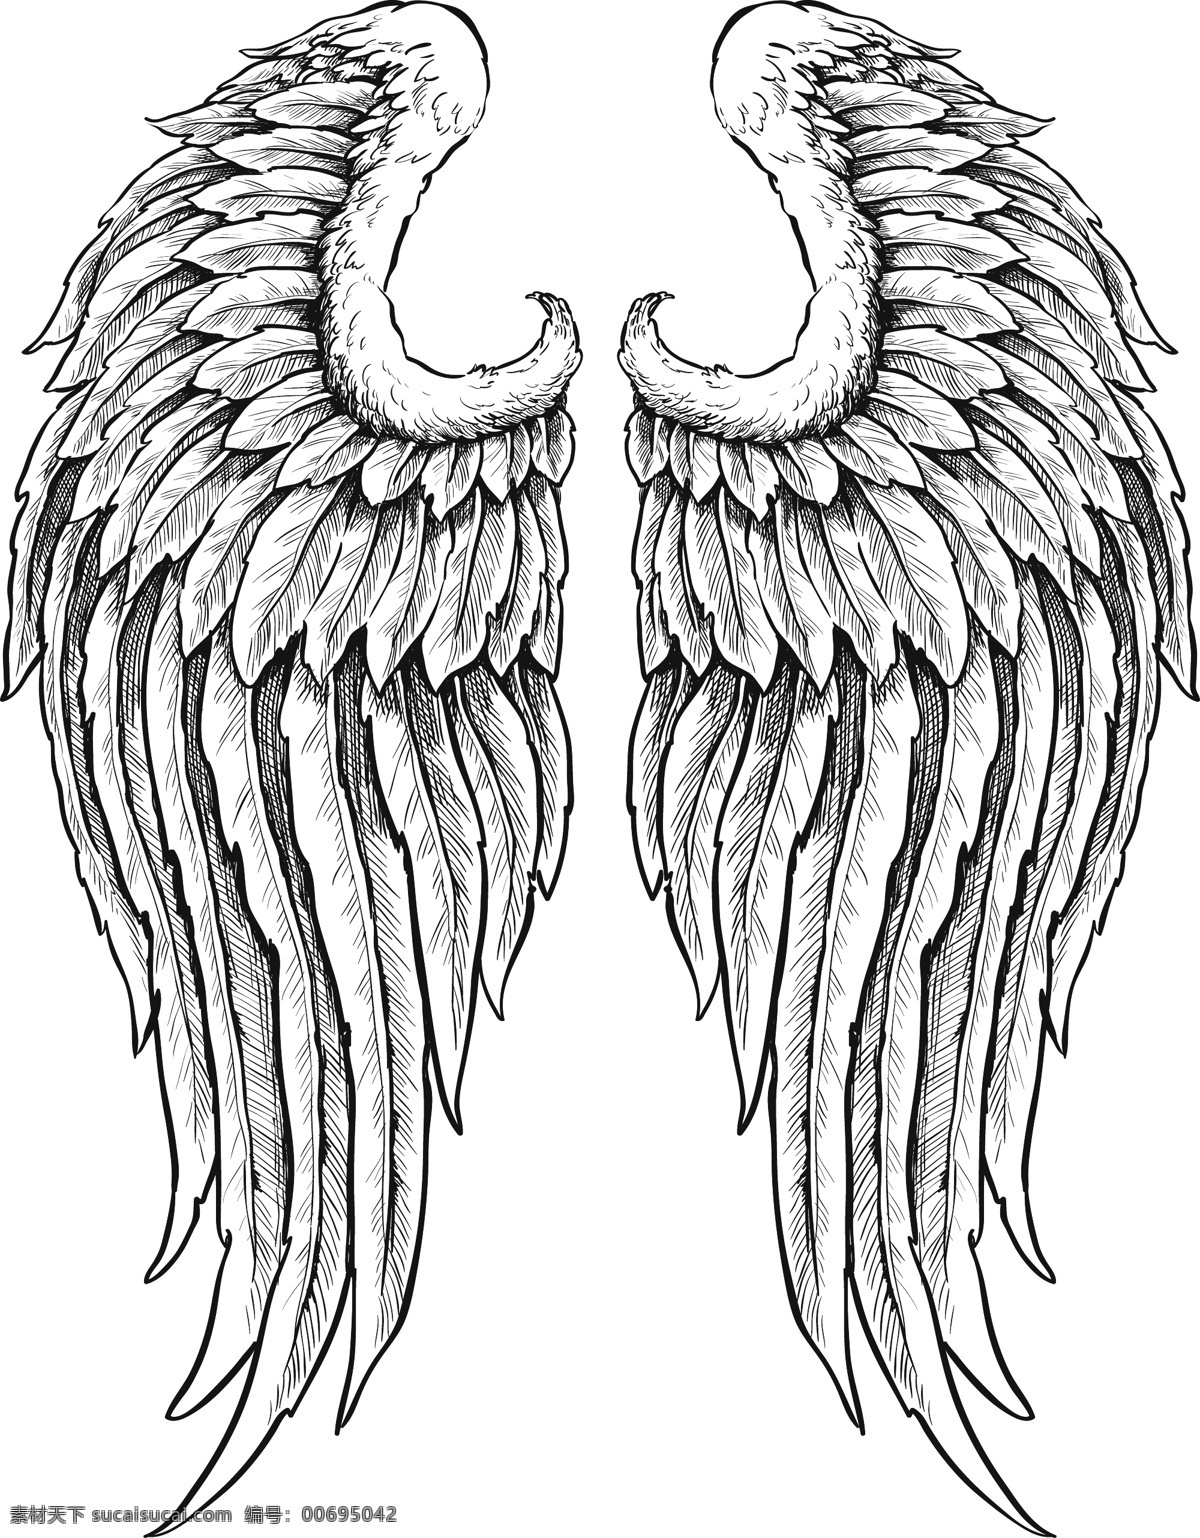 创意翅膀设计 羽毛 花纹 翅膀 翅膀设计 矢量翅膀 翅膀素材 创意翅膀 矢量素材 底纹边框 白色